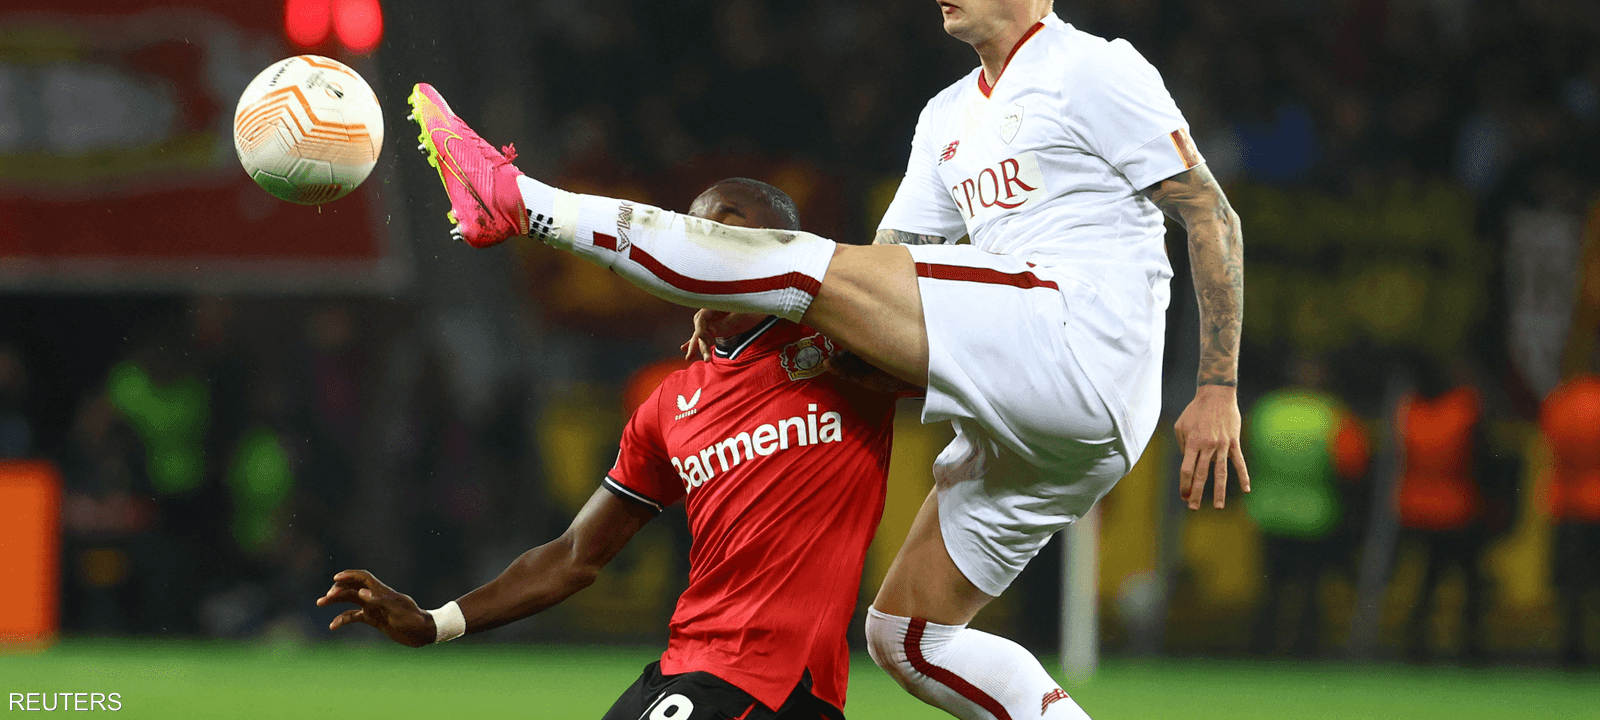 موسى ديابي في مواجهة كروية مع نيكولا زالوسكي لاعب روما